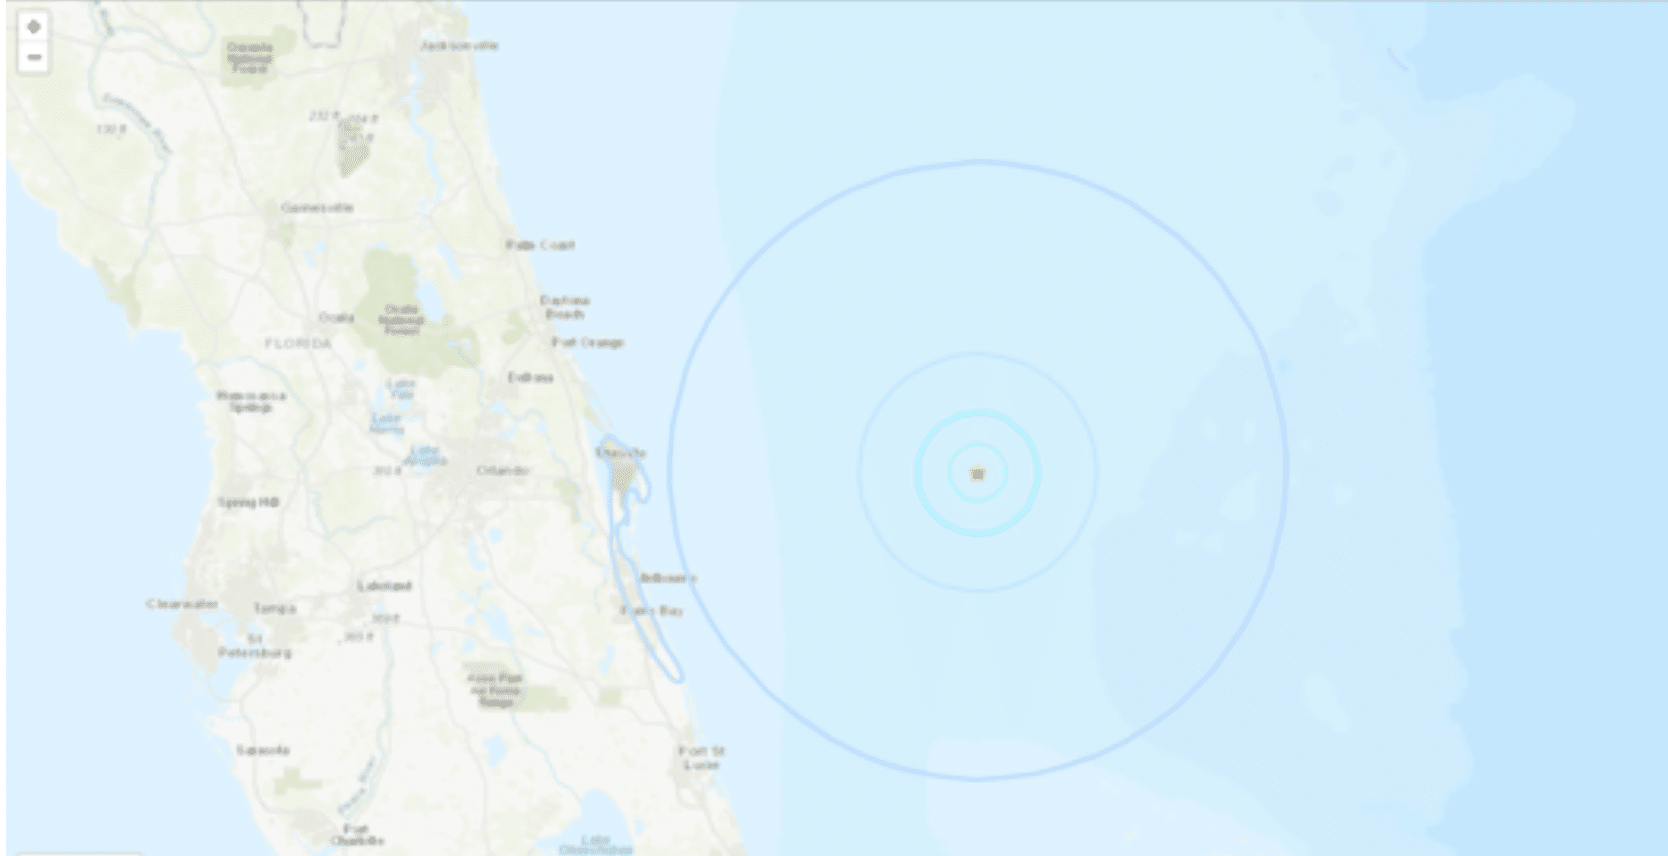 Rare 4.0 magnitude earthquake recorded off of Florida’s east coast